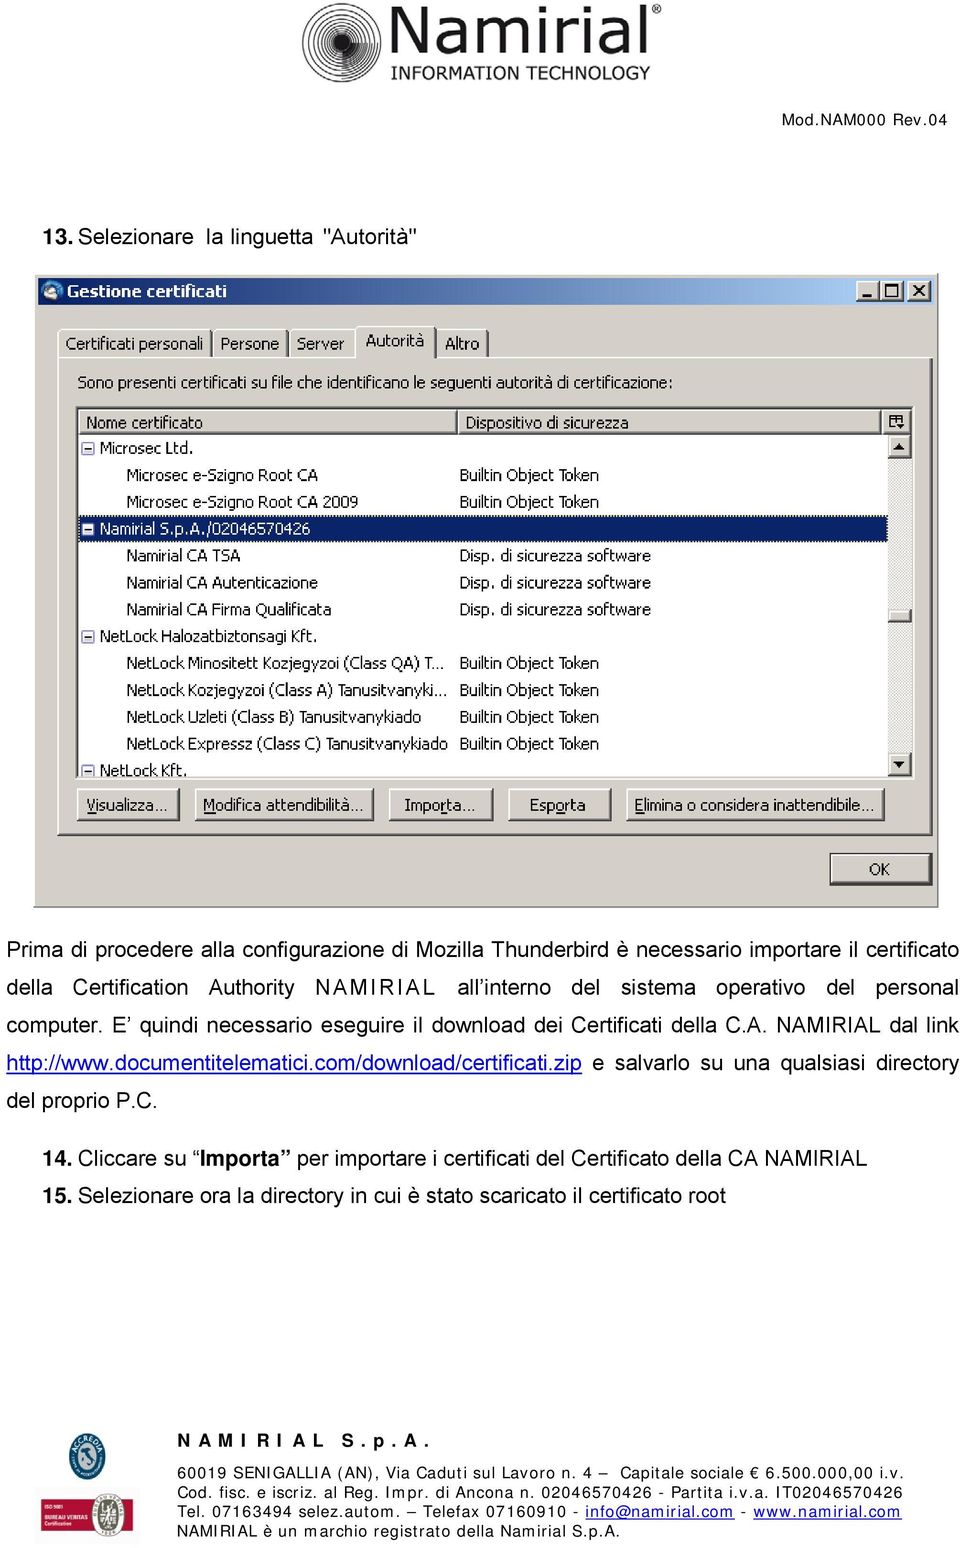 E quindi necessario eseguire il download dei Certificati della C.A. NAMIRIAL dal link http://www.documentitelematici.com/download/certificati.